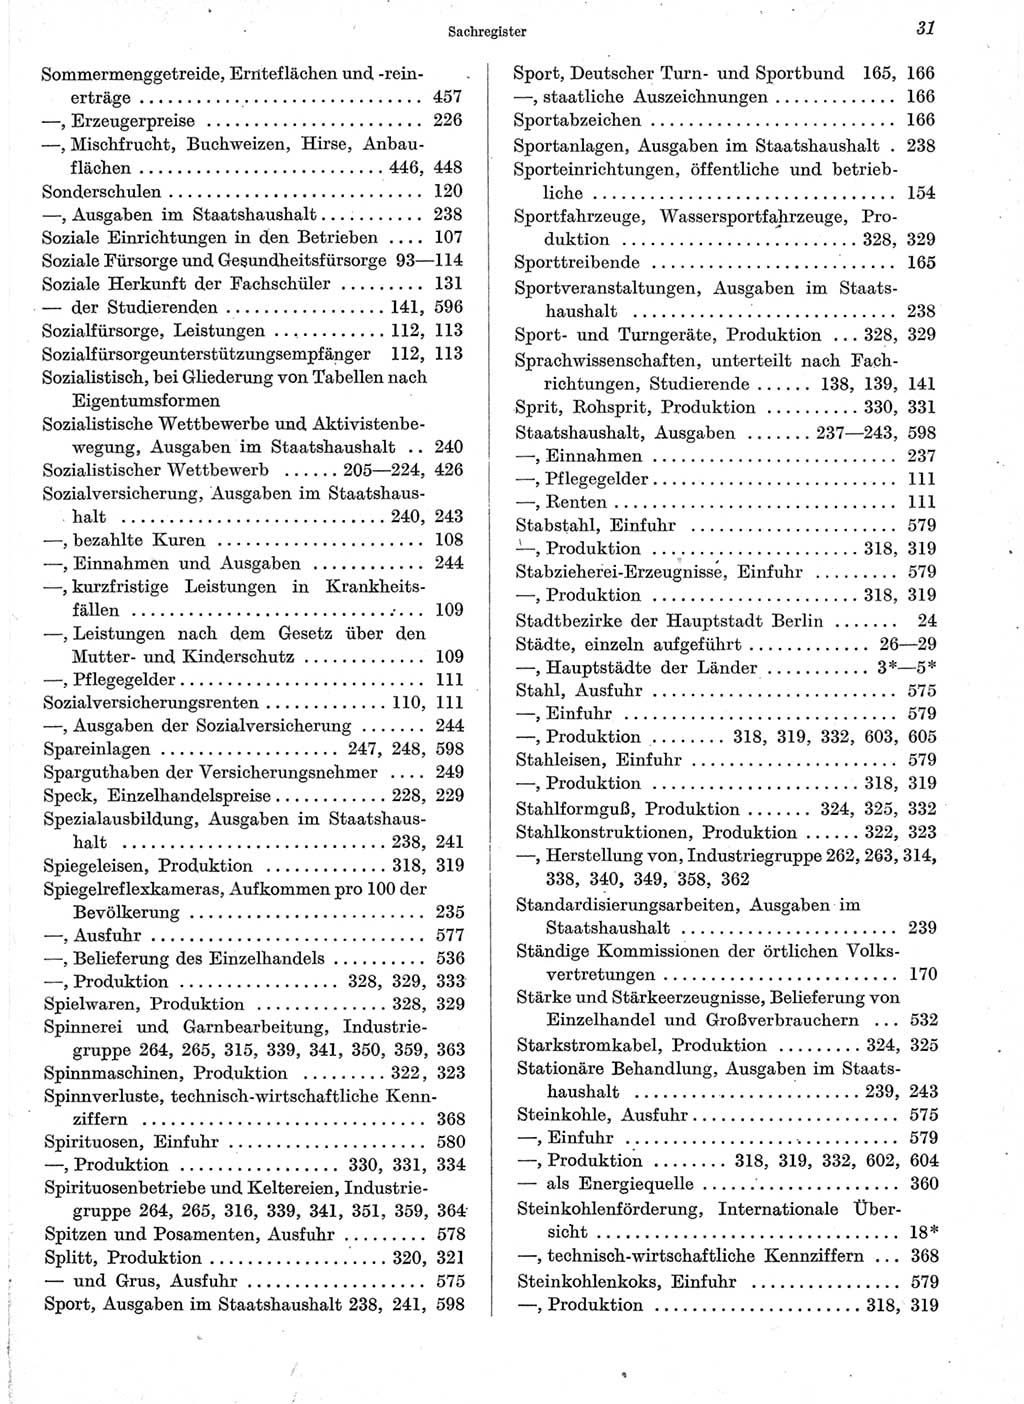 Statistisches Jahrbuch der Deutschen Demokratischen Republik (DDR) 1960-1961, Seite 31 (Stat. Jb. DDR 1960-1961, S. 31)